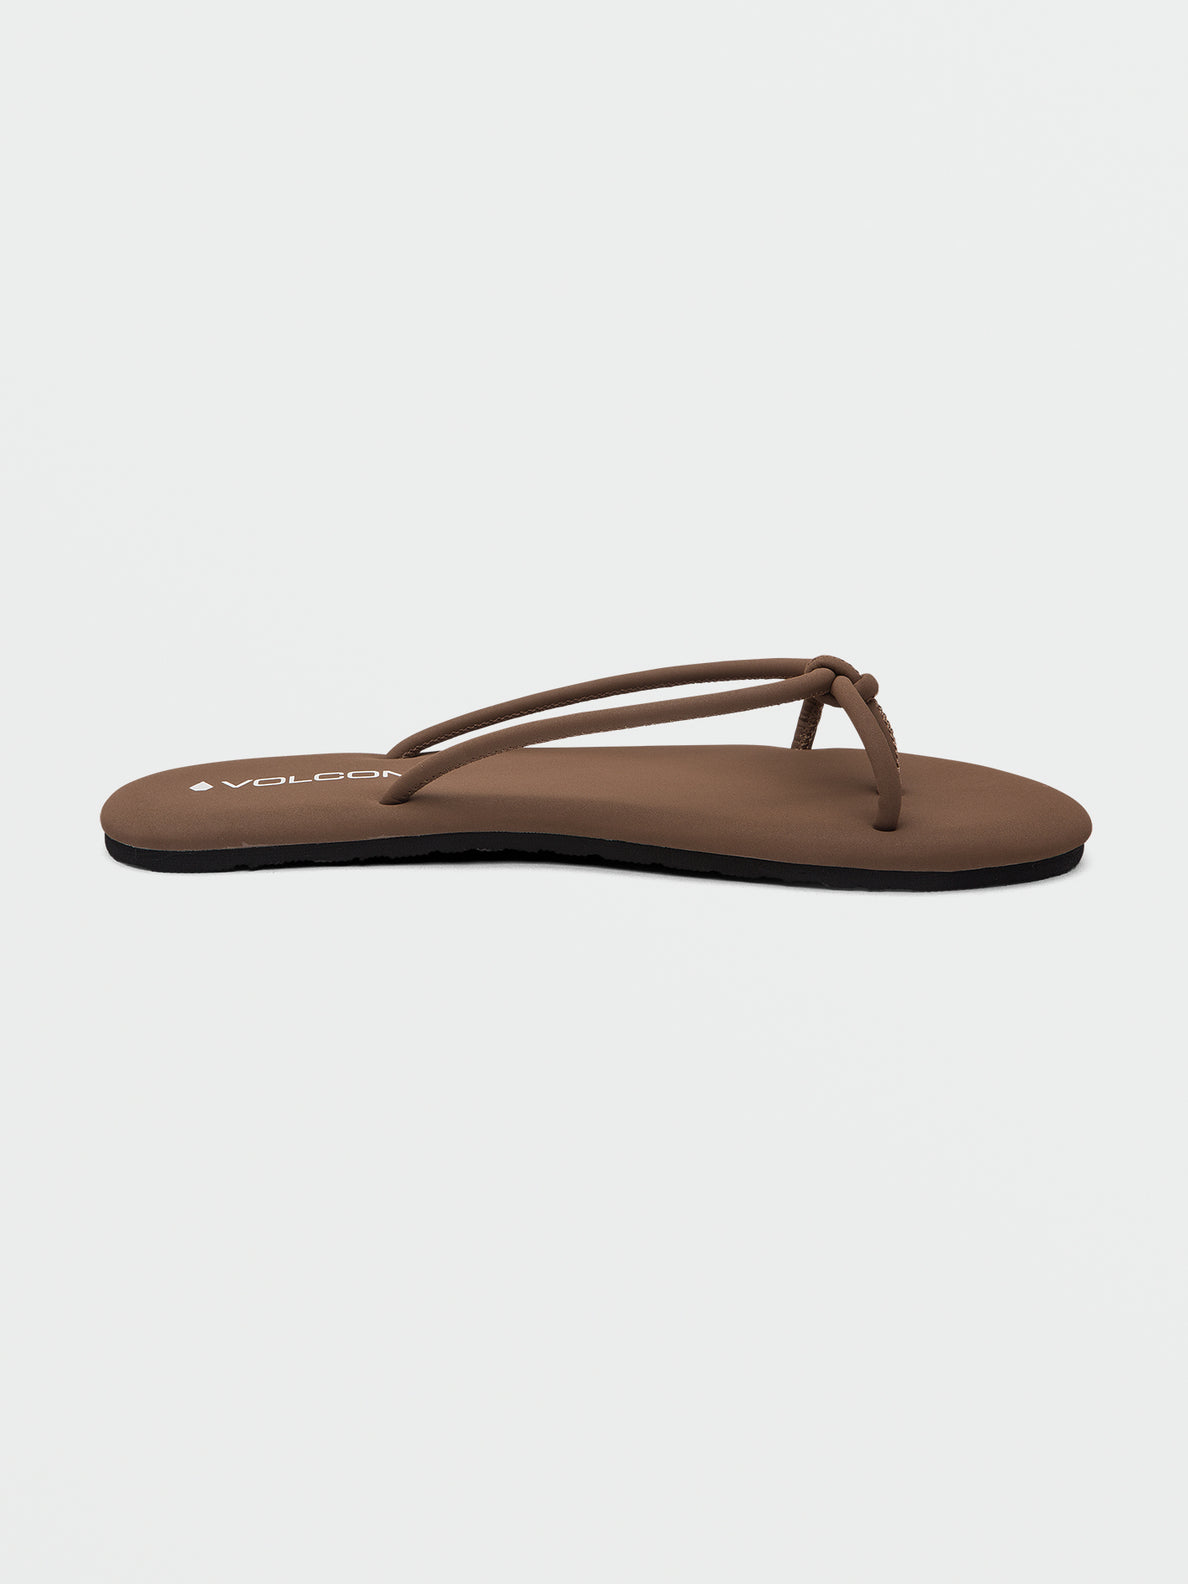 Fast Forward Sandals - Tan (W0812301_TAN) [2]